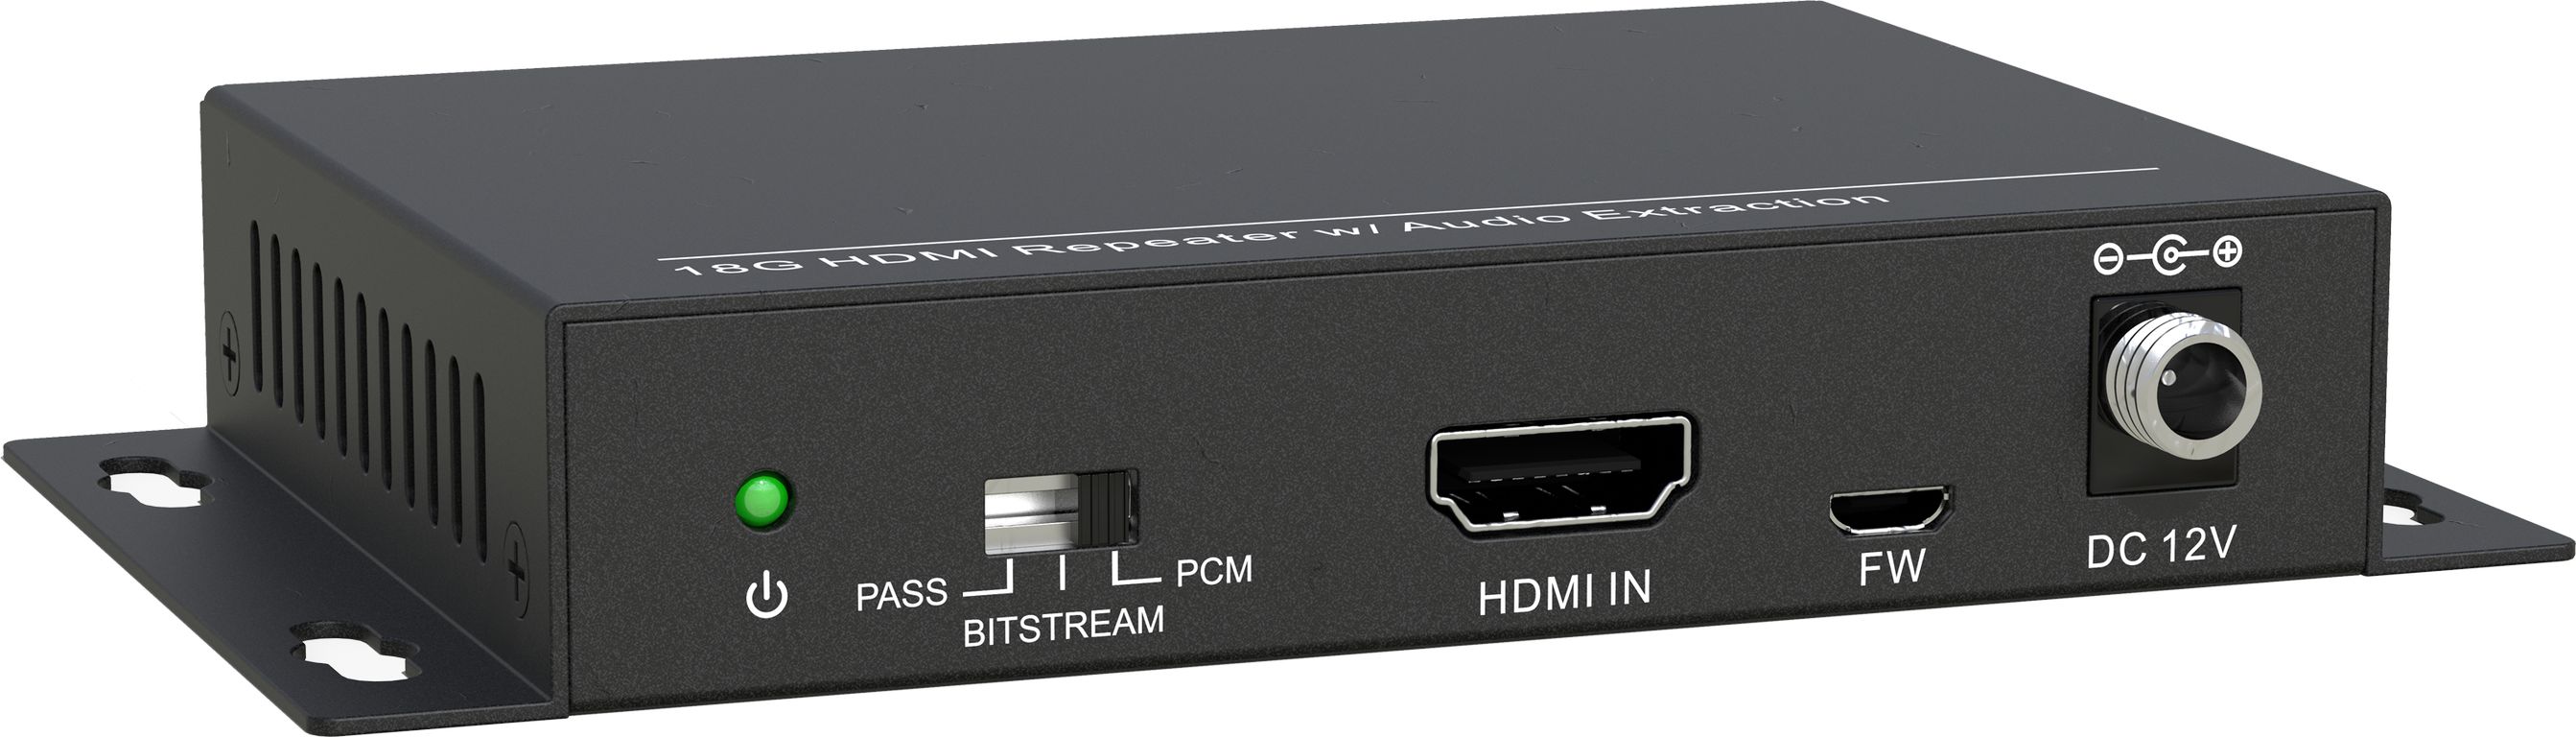 HDMI коммутаторы, разветвители, повторители Digis SS-AC1-4K2 hdmi коммутаторы разветвители повторители dr hd sp 186 sl